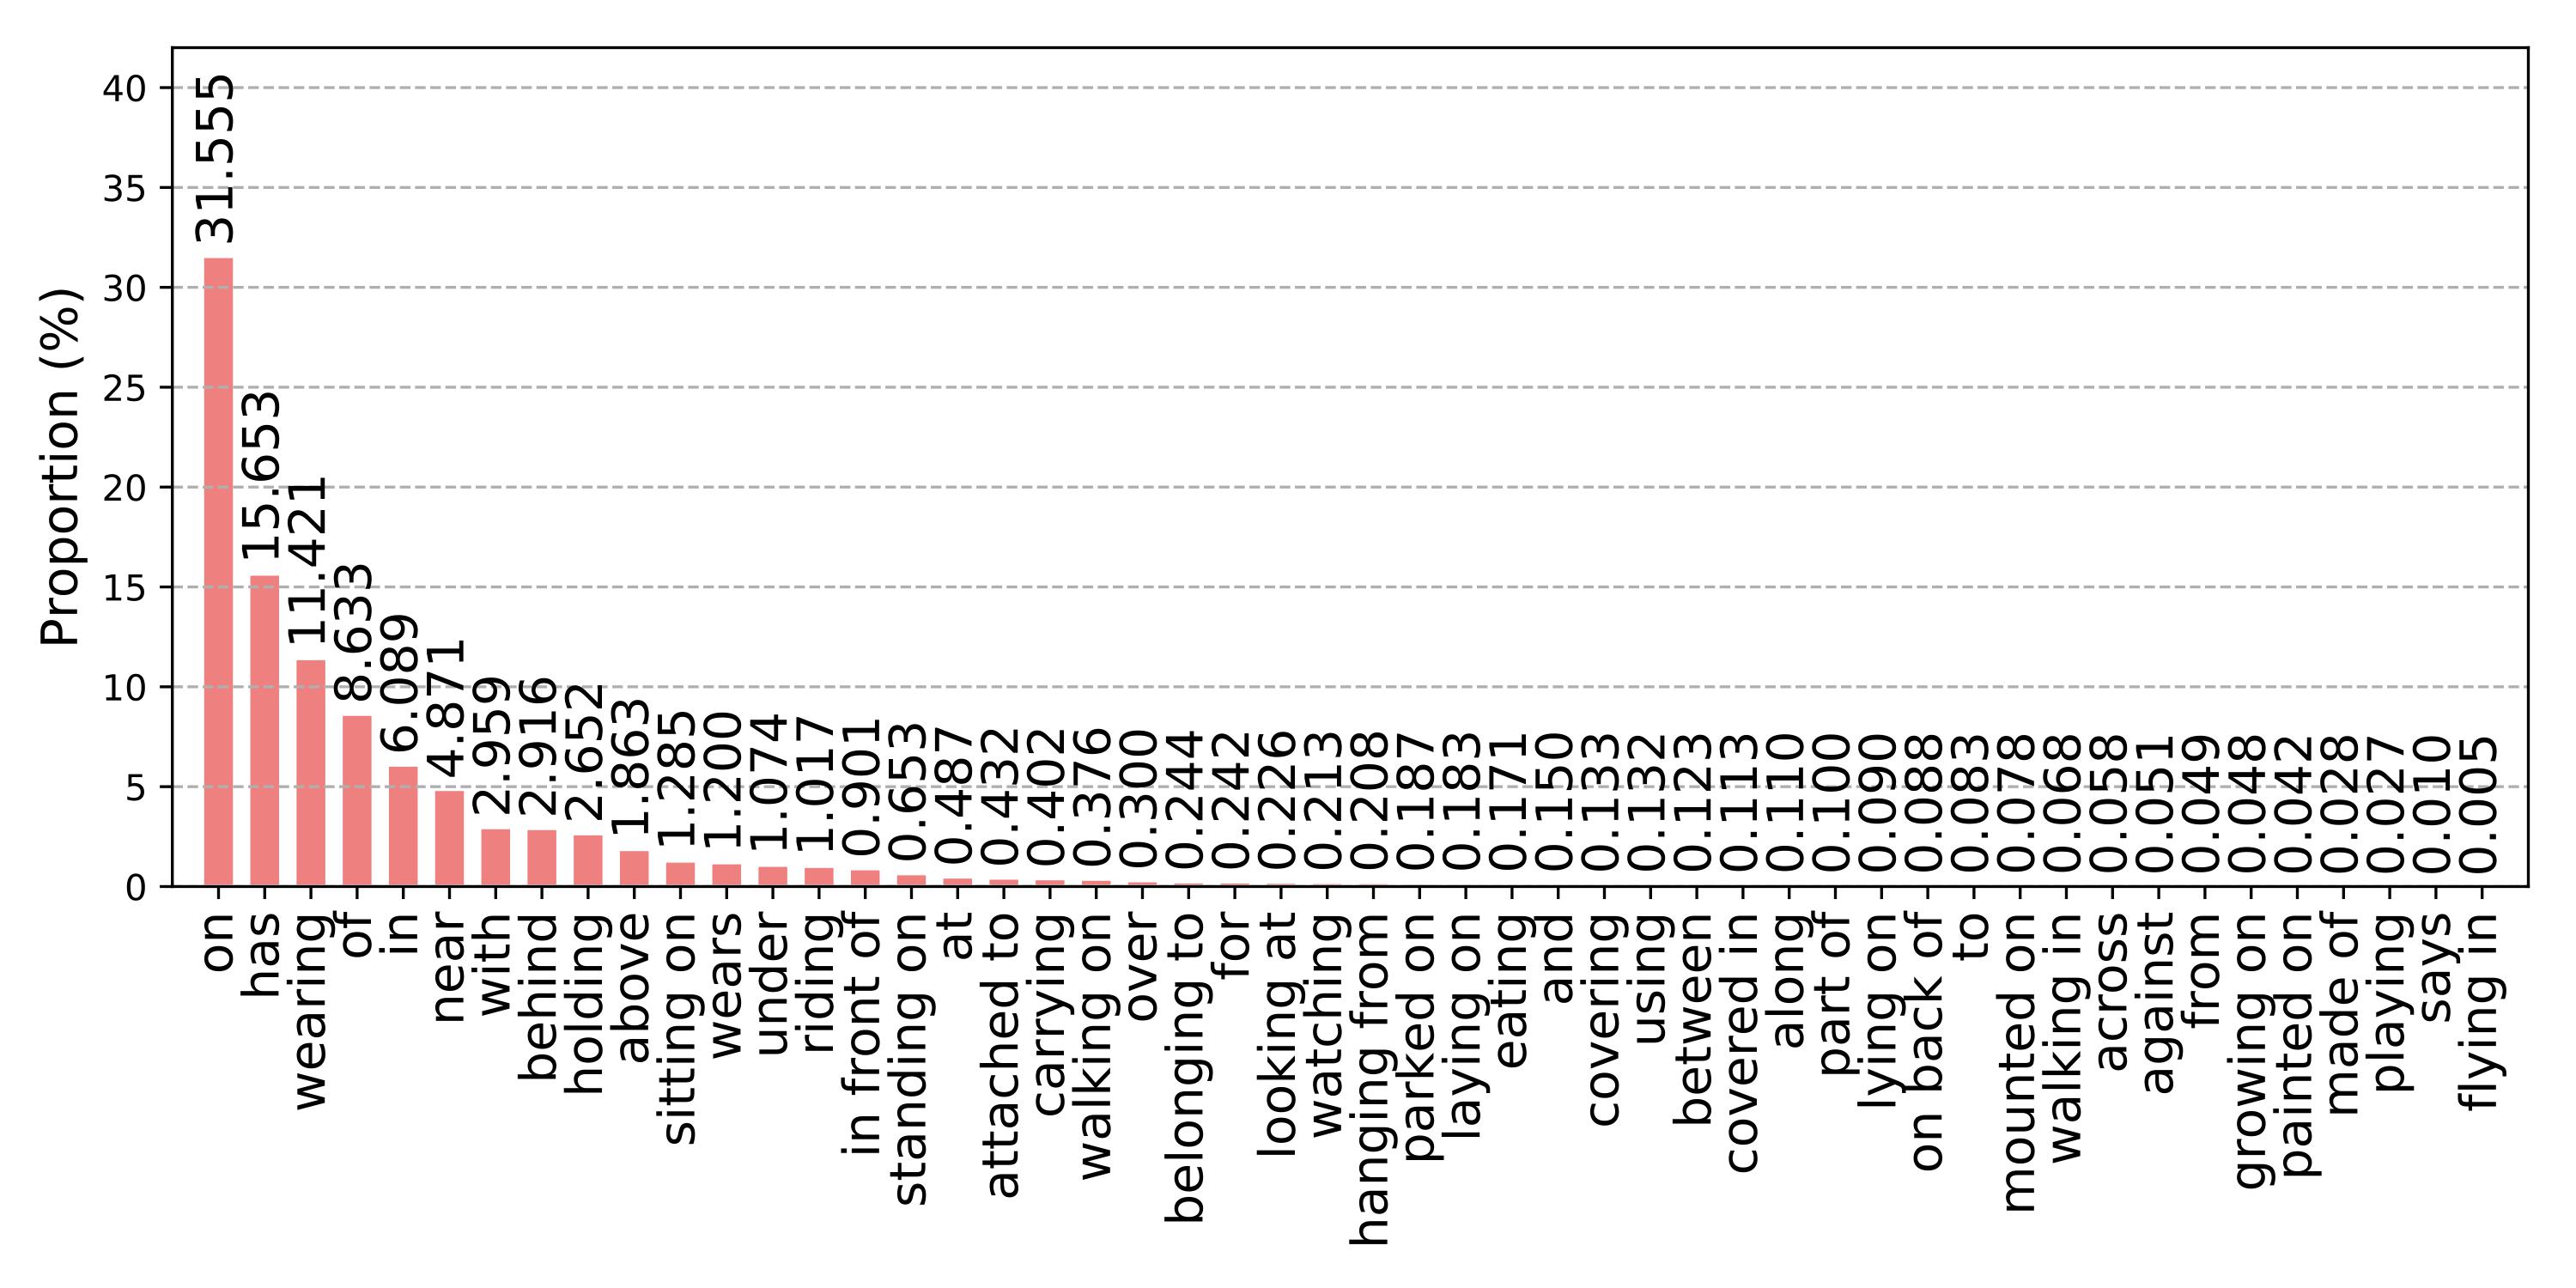 relationship distribution of VG dataset